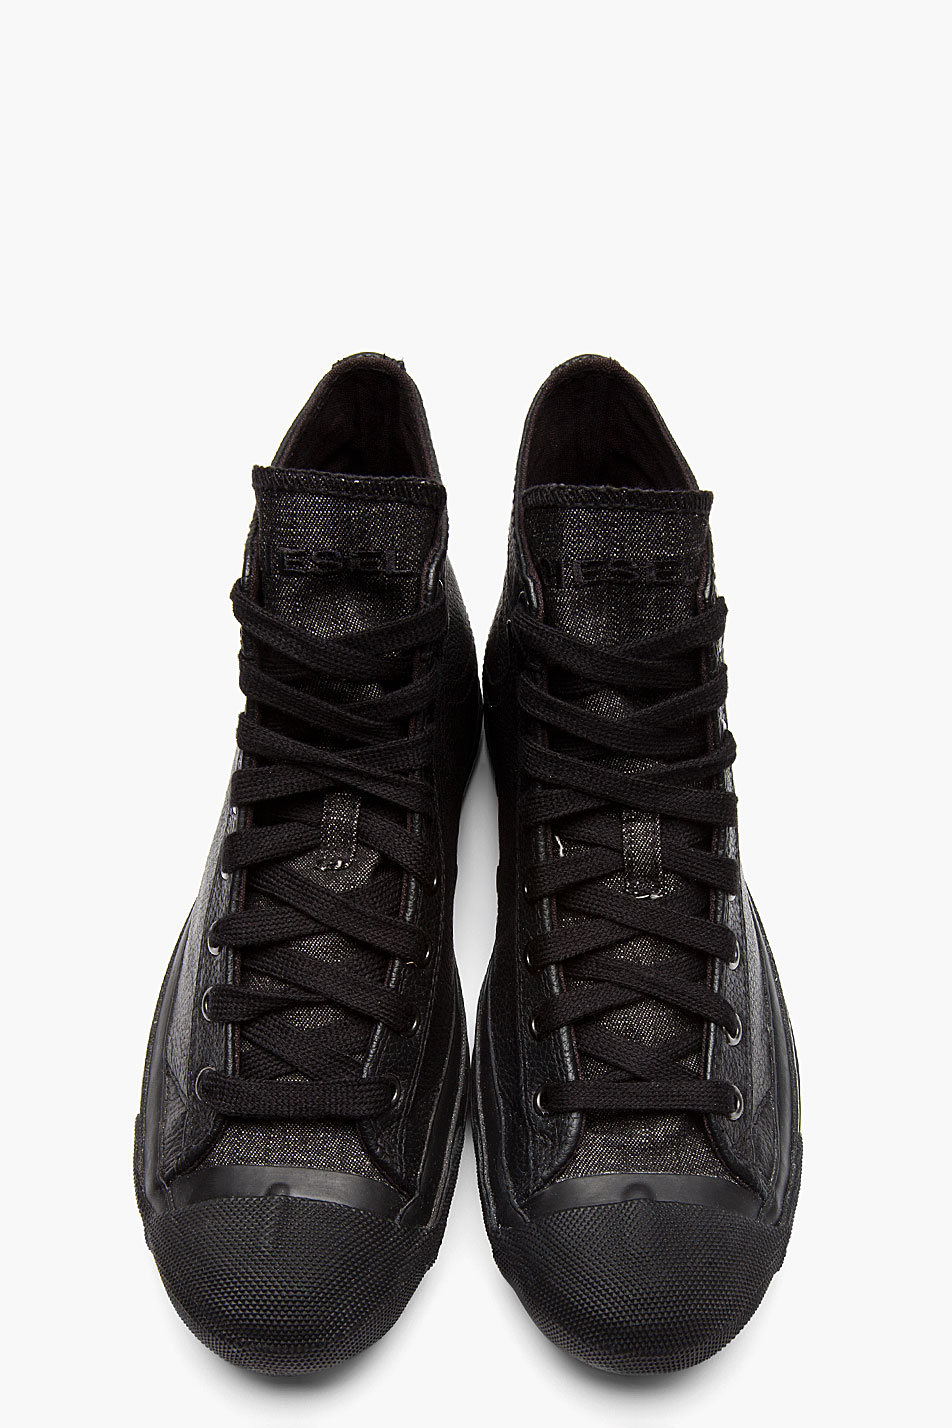 DIESEL Black Leather Exposure High-top Sneakers for Men | Lyst